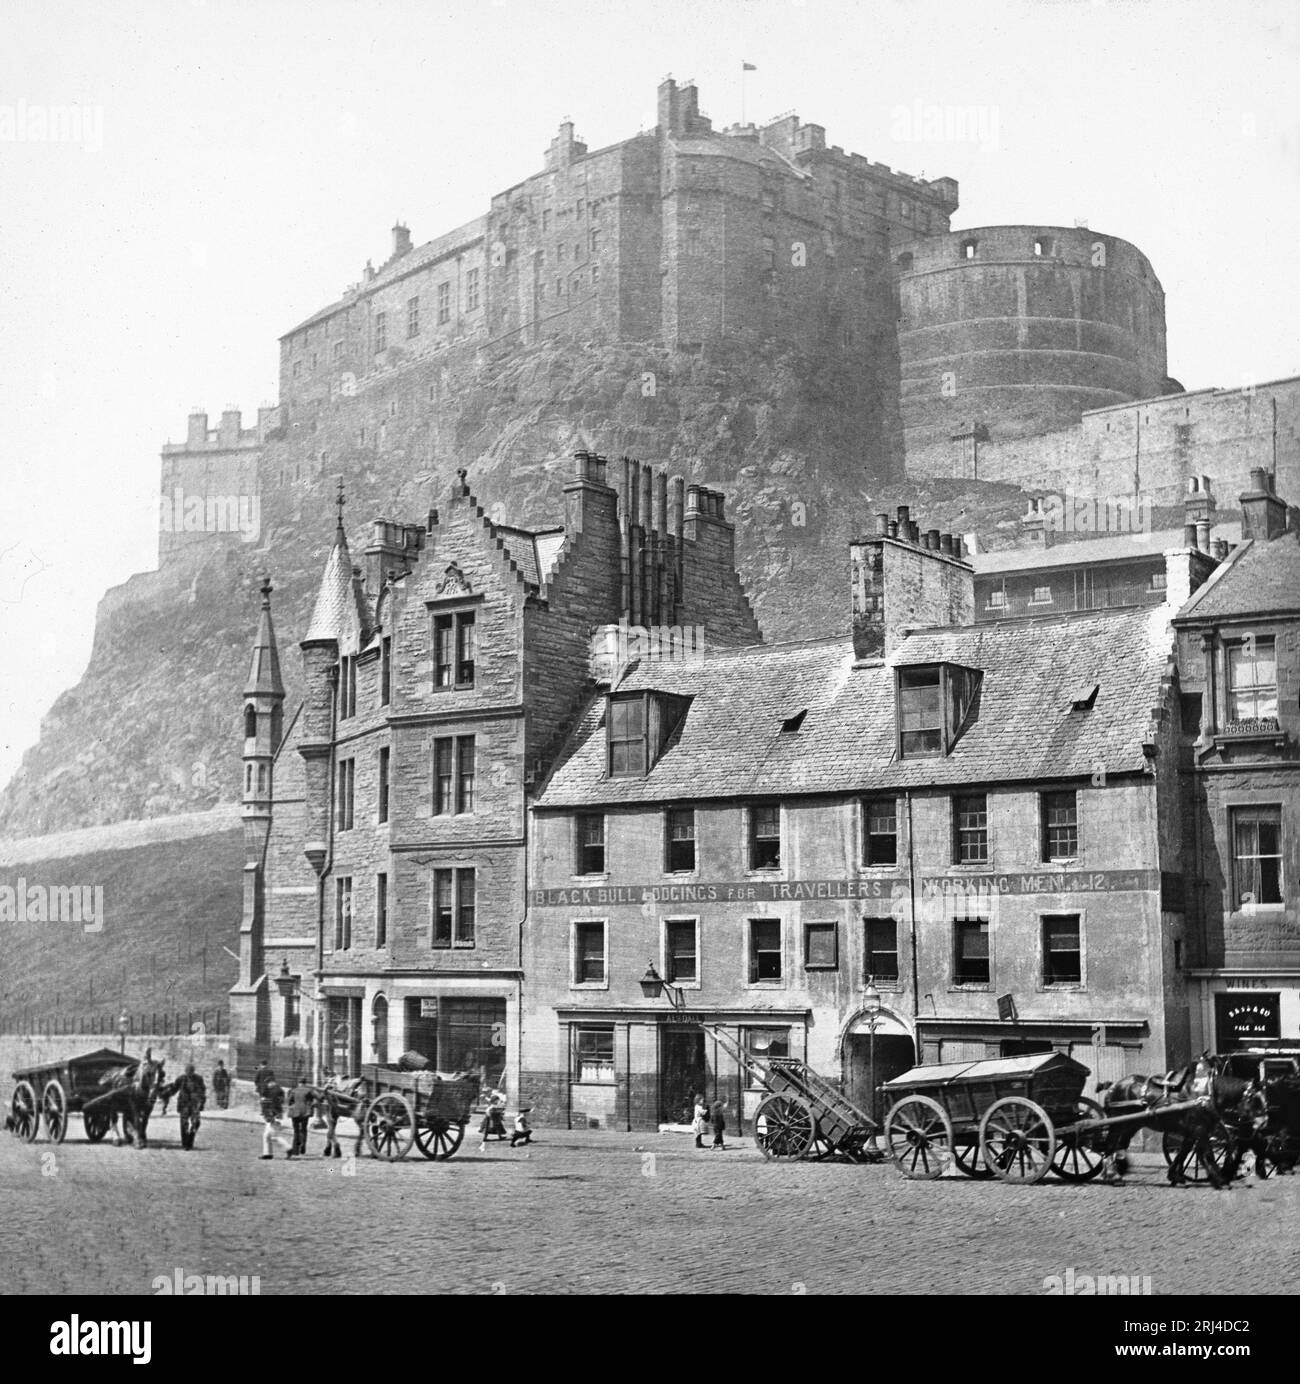 Una fotografia in bianco e nero della fine del XIX secolo di Edimburgo in Scozia, che mostra il castello e il Black Bull Inn. Foto Stock